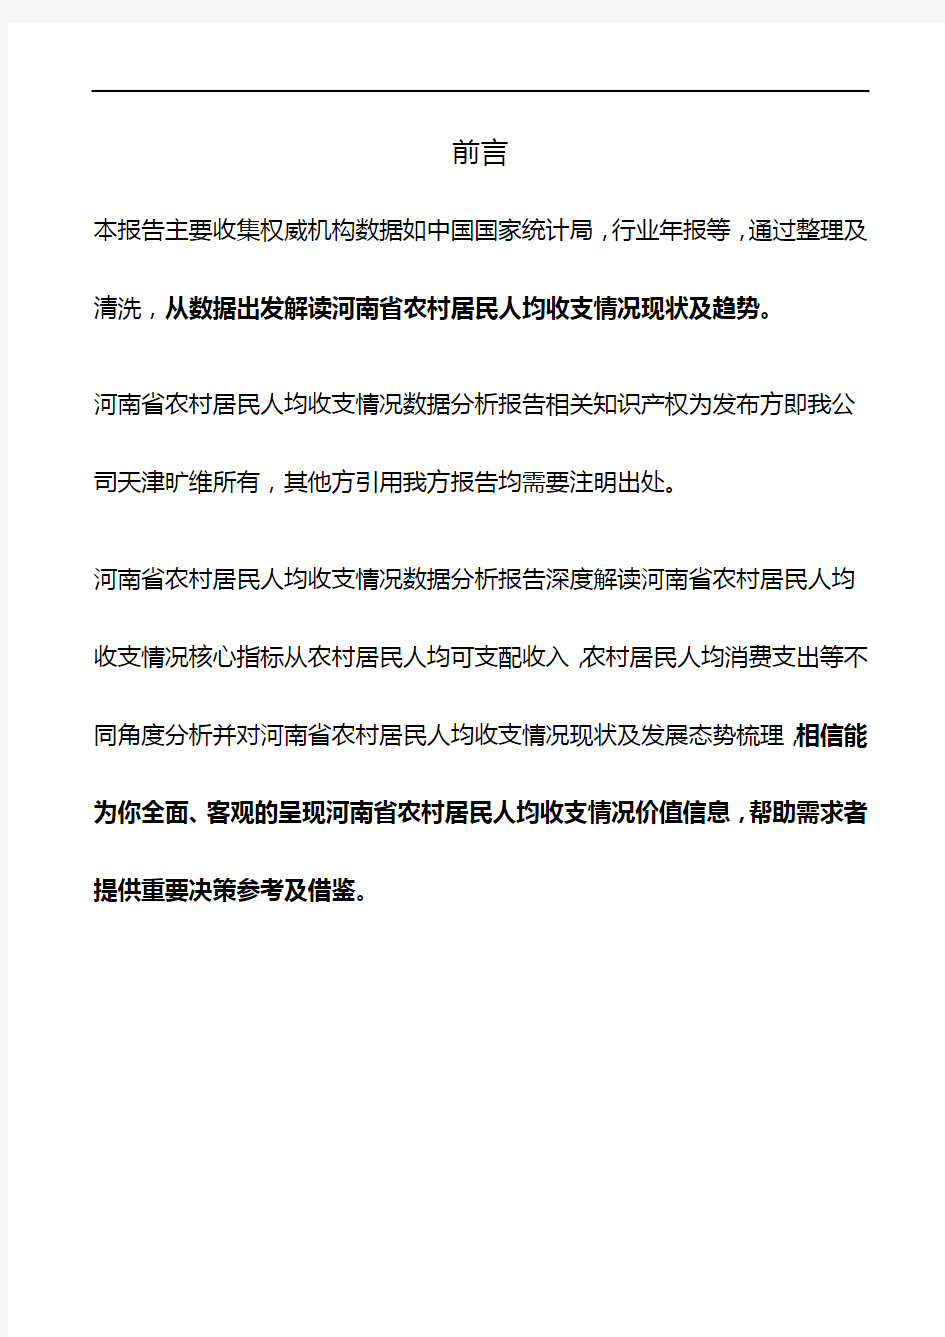 河南省农村居民人均收支情况3年数据分析报告2019版